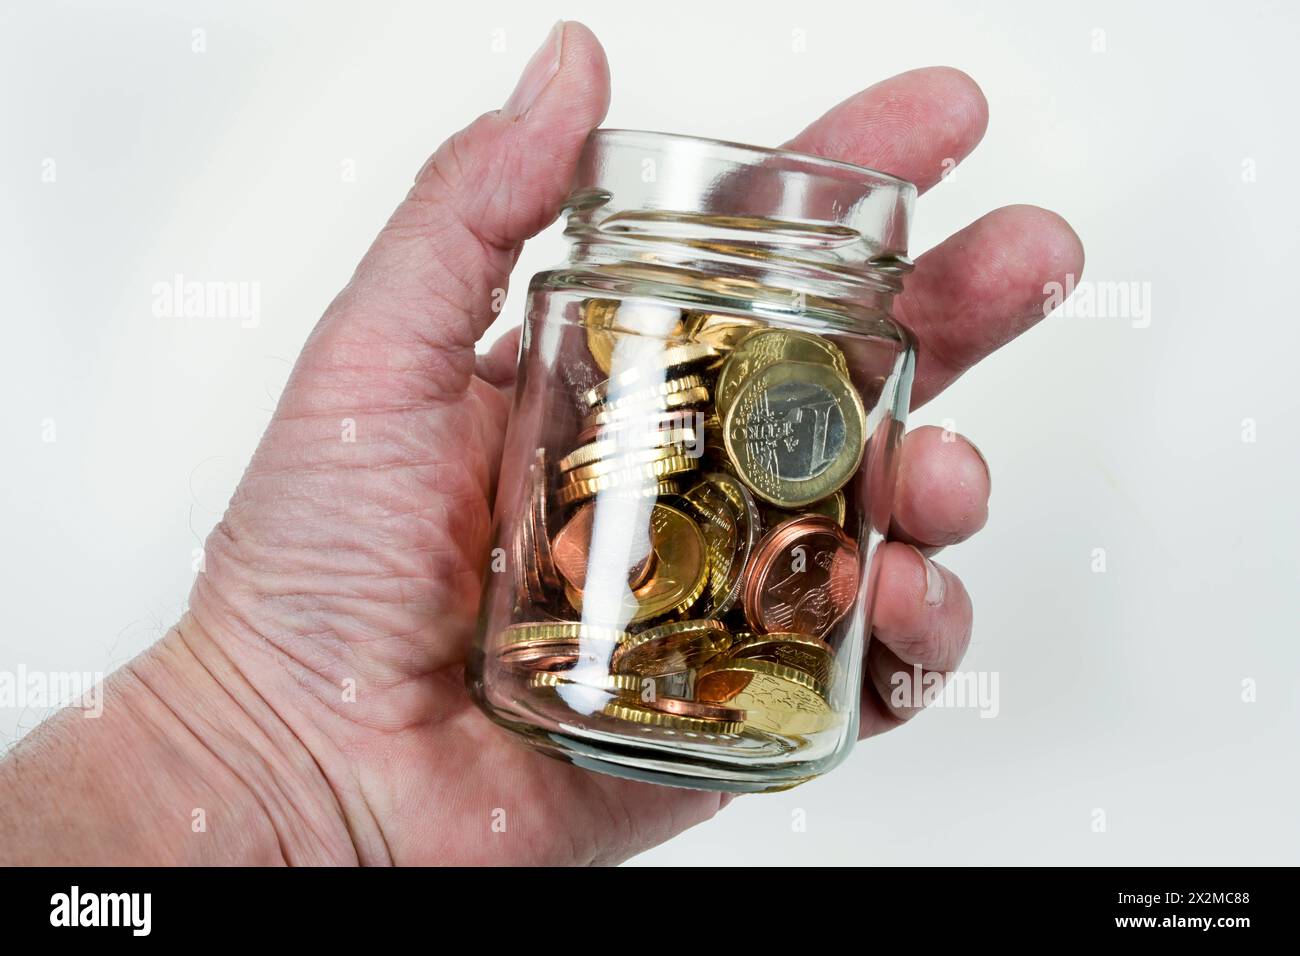 Euros und Centmünze im Glas, Symbolfoto Sparen, Sparsamkeit *** Euros and cent coin in a jar, symbolic photo Saving, thriftiness Stock Photo